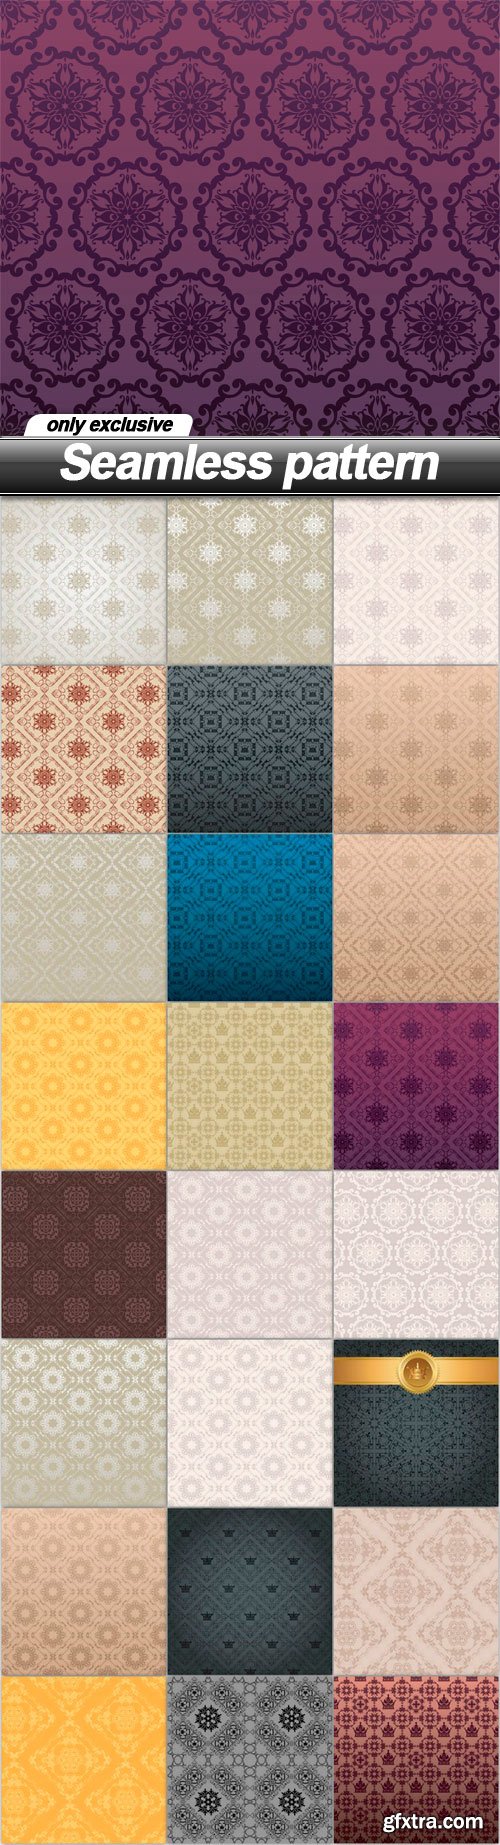 Seamless pattern - 25 EPS